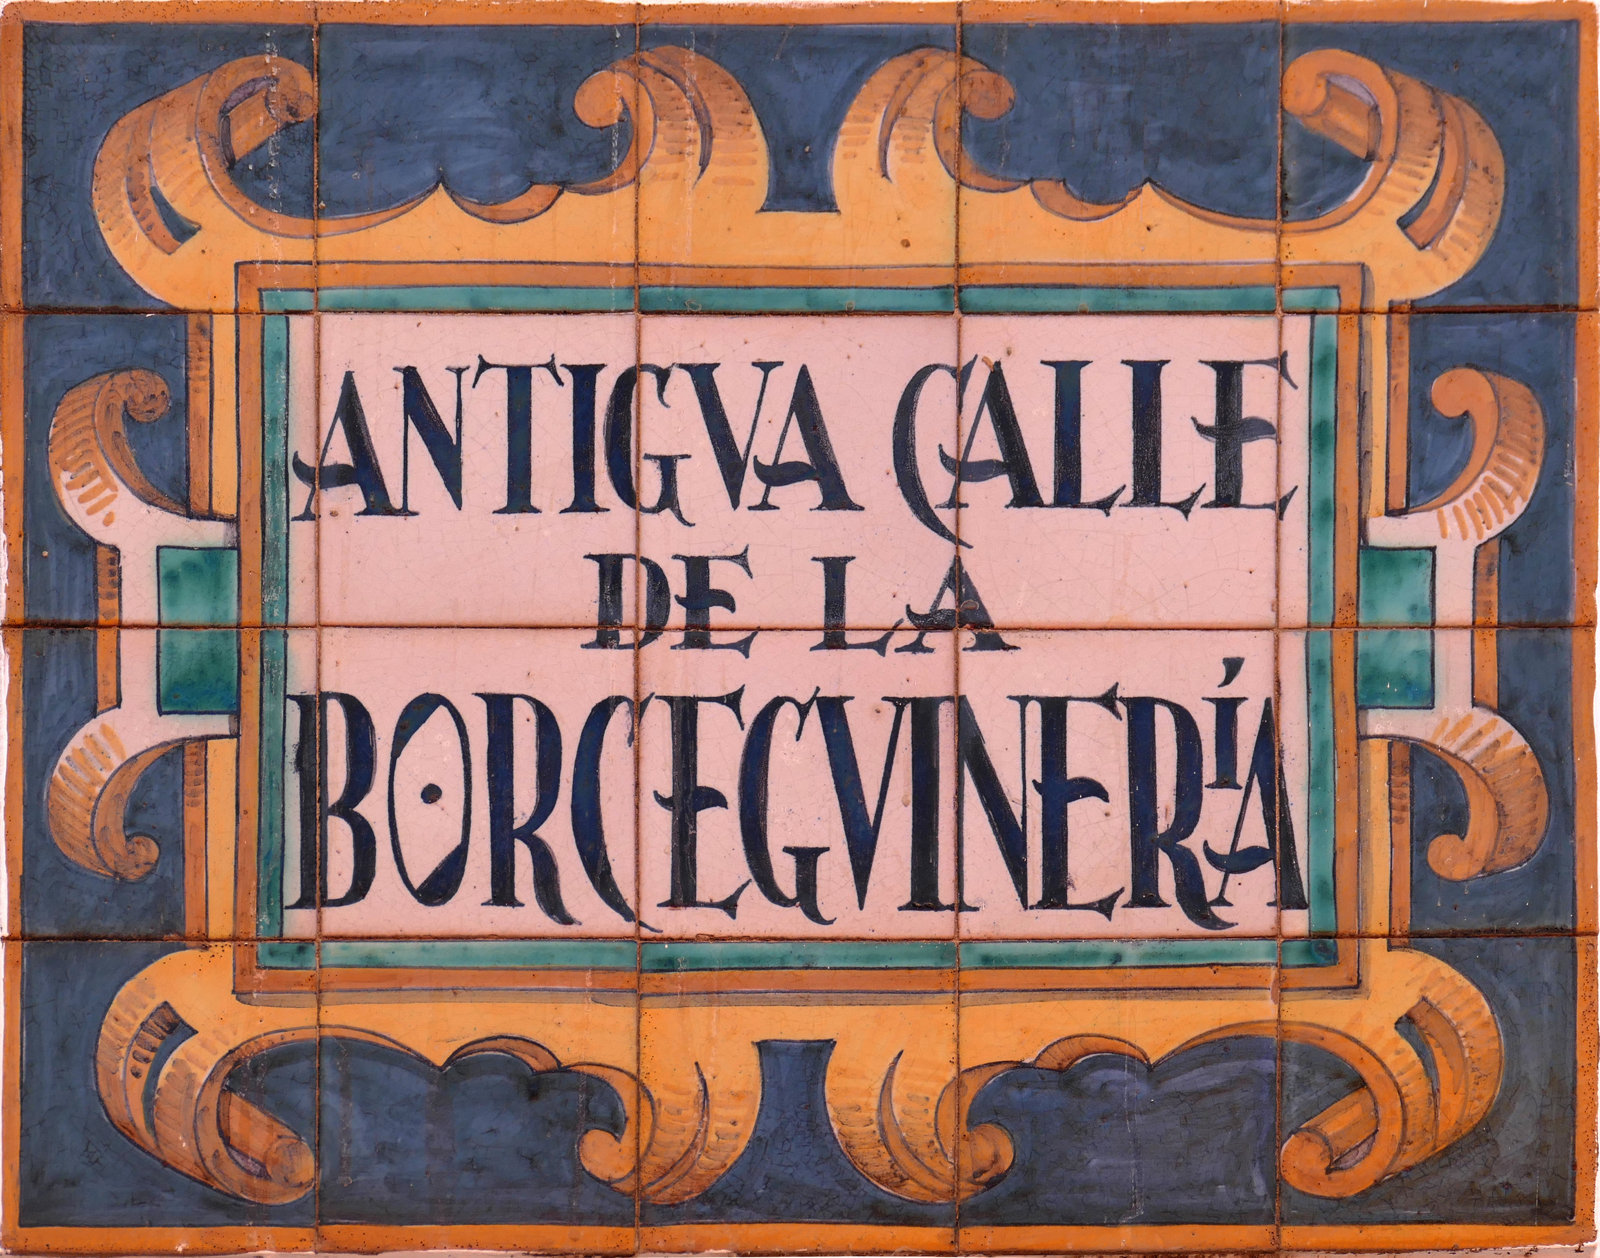 00988. Rótulo de la antigua calle de la Borceguinería. Sevilla.